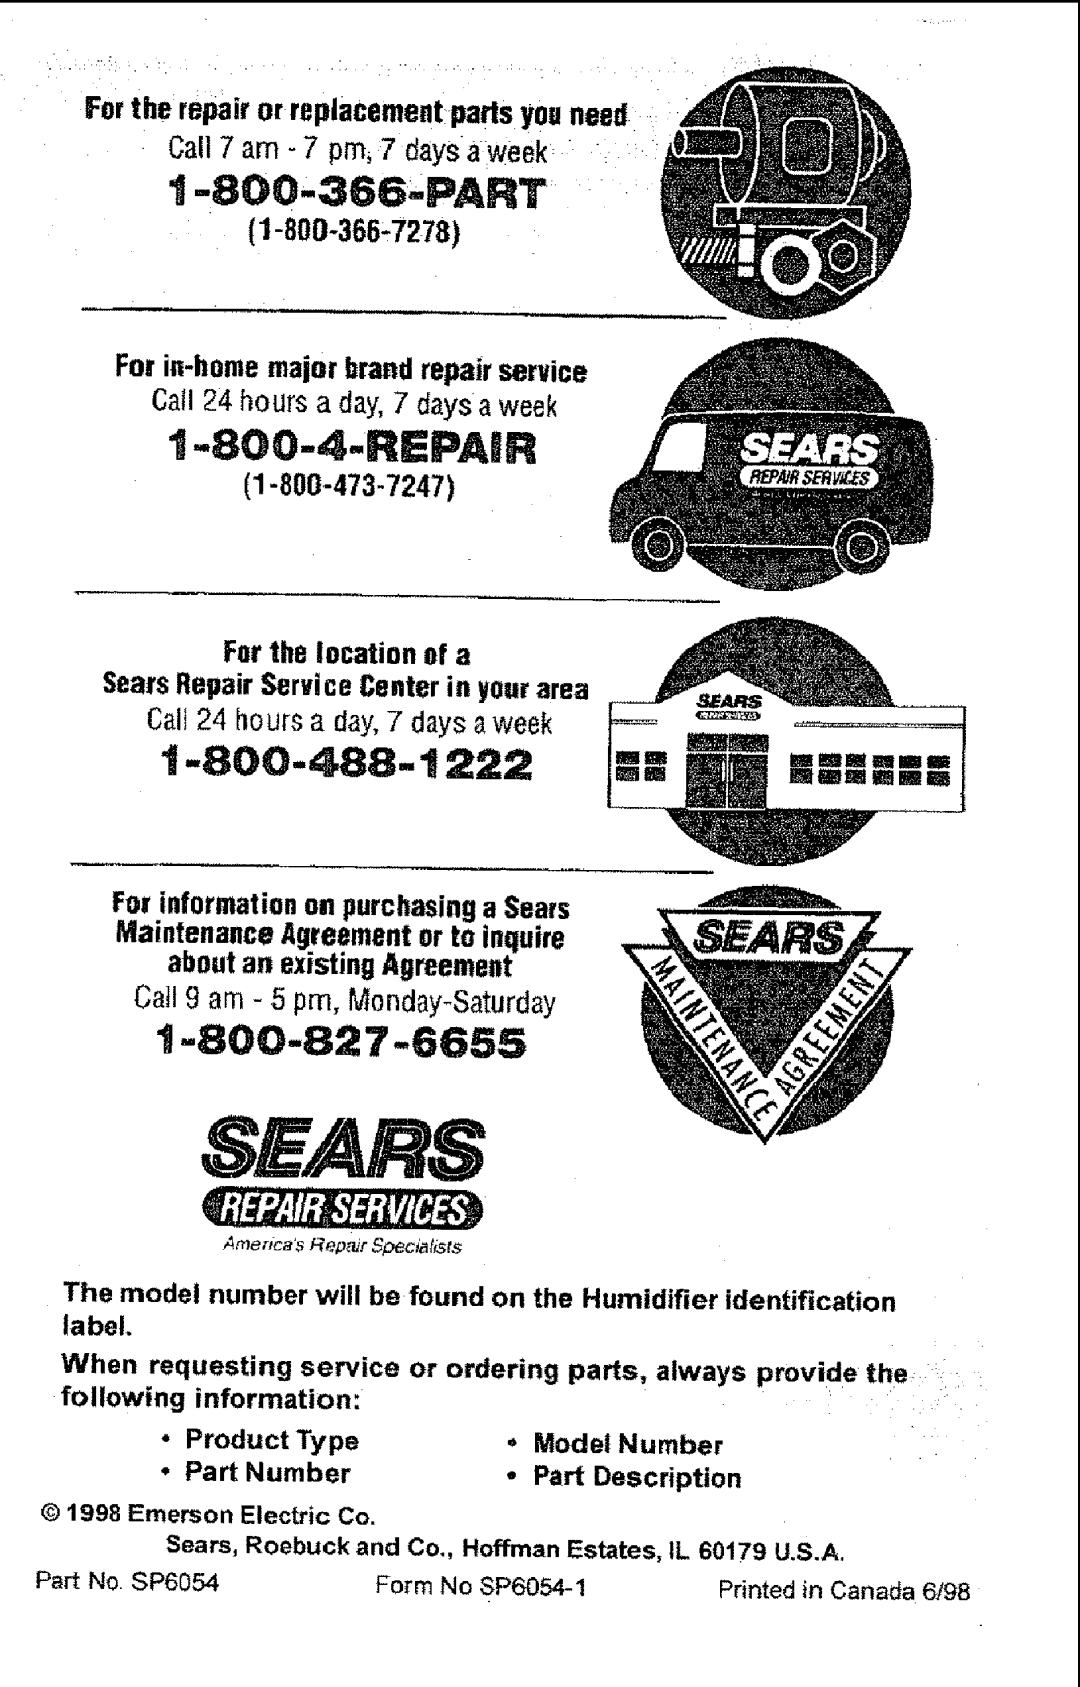 Sears 758.14451 owner manual S£/Ars, Repair, Part 